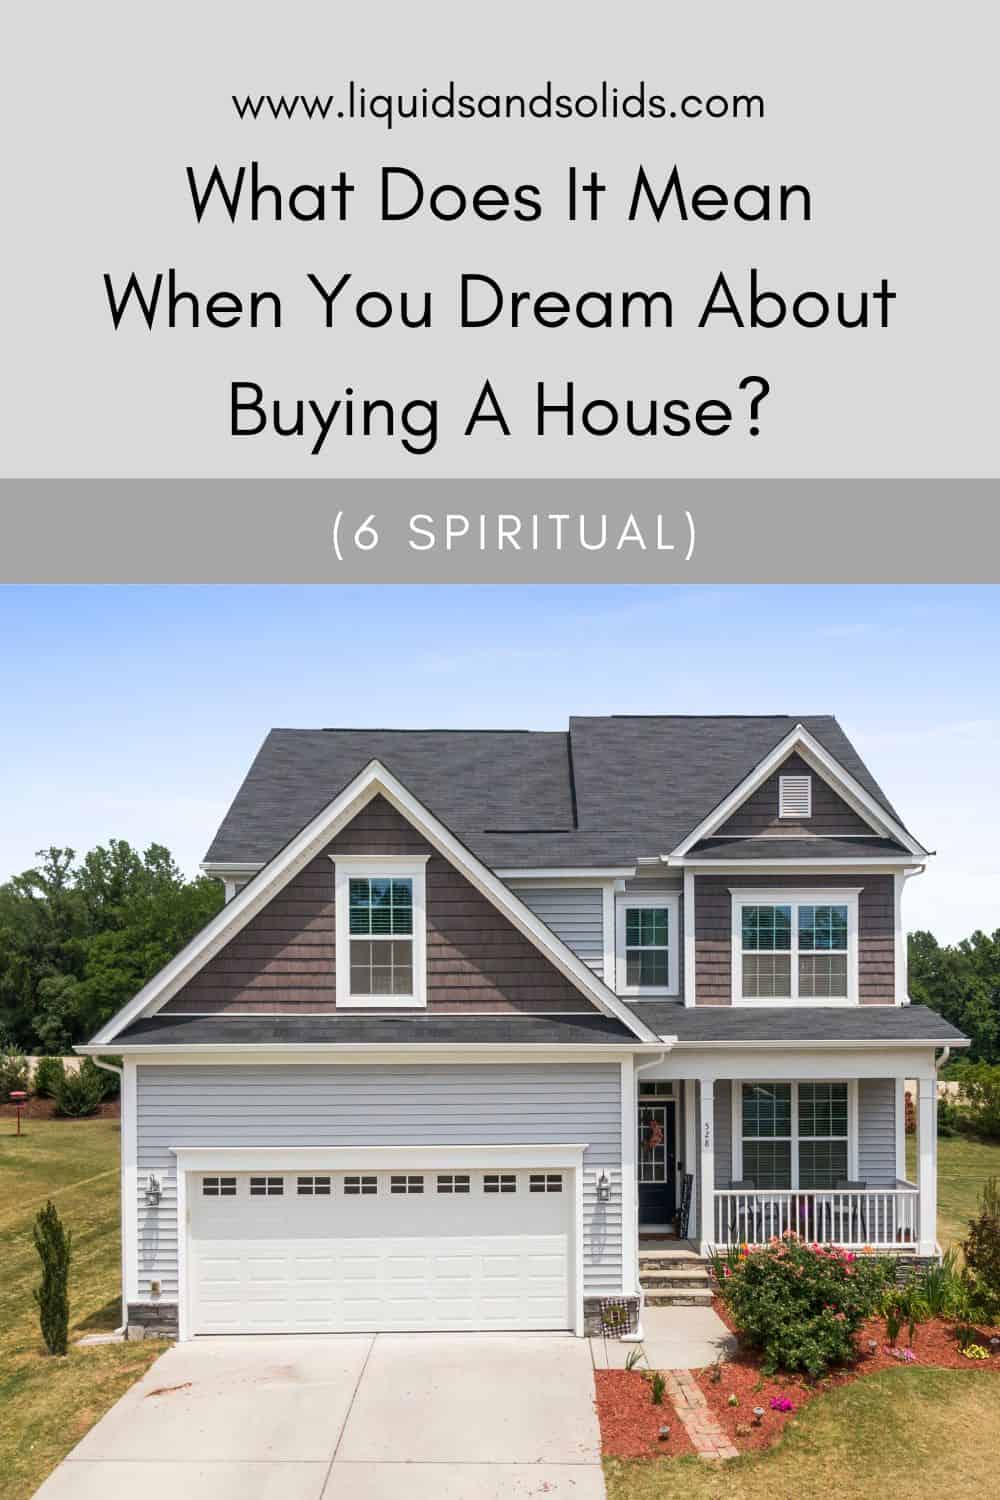  هل تحلم بشراء منزل؟ (6 معاني روحية)